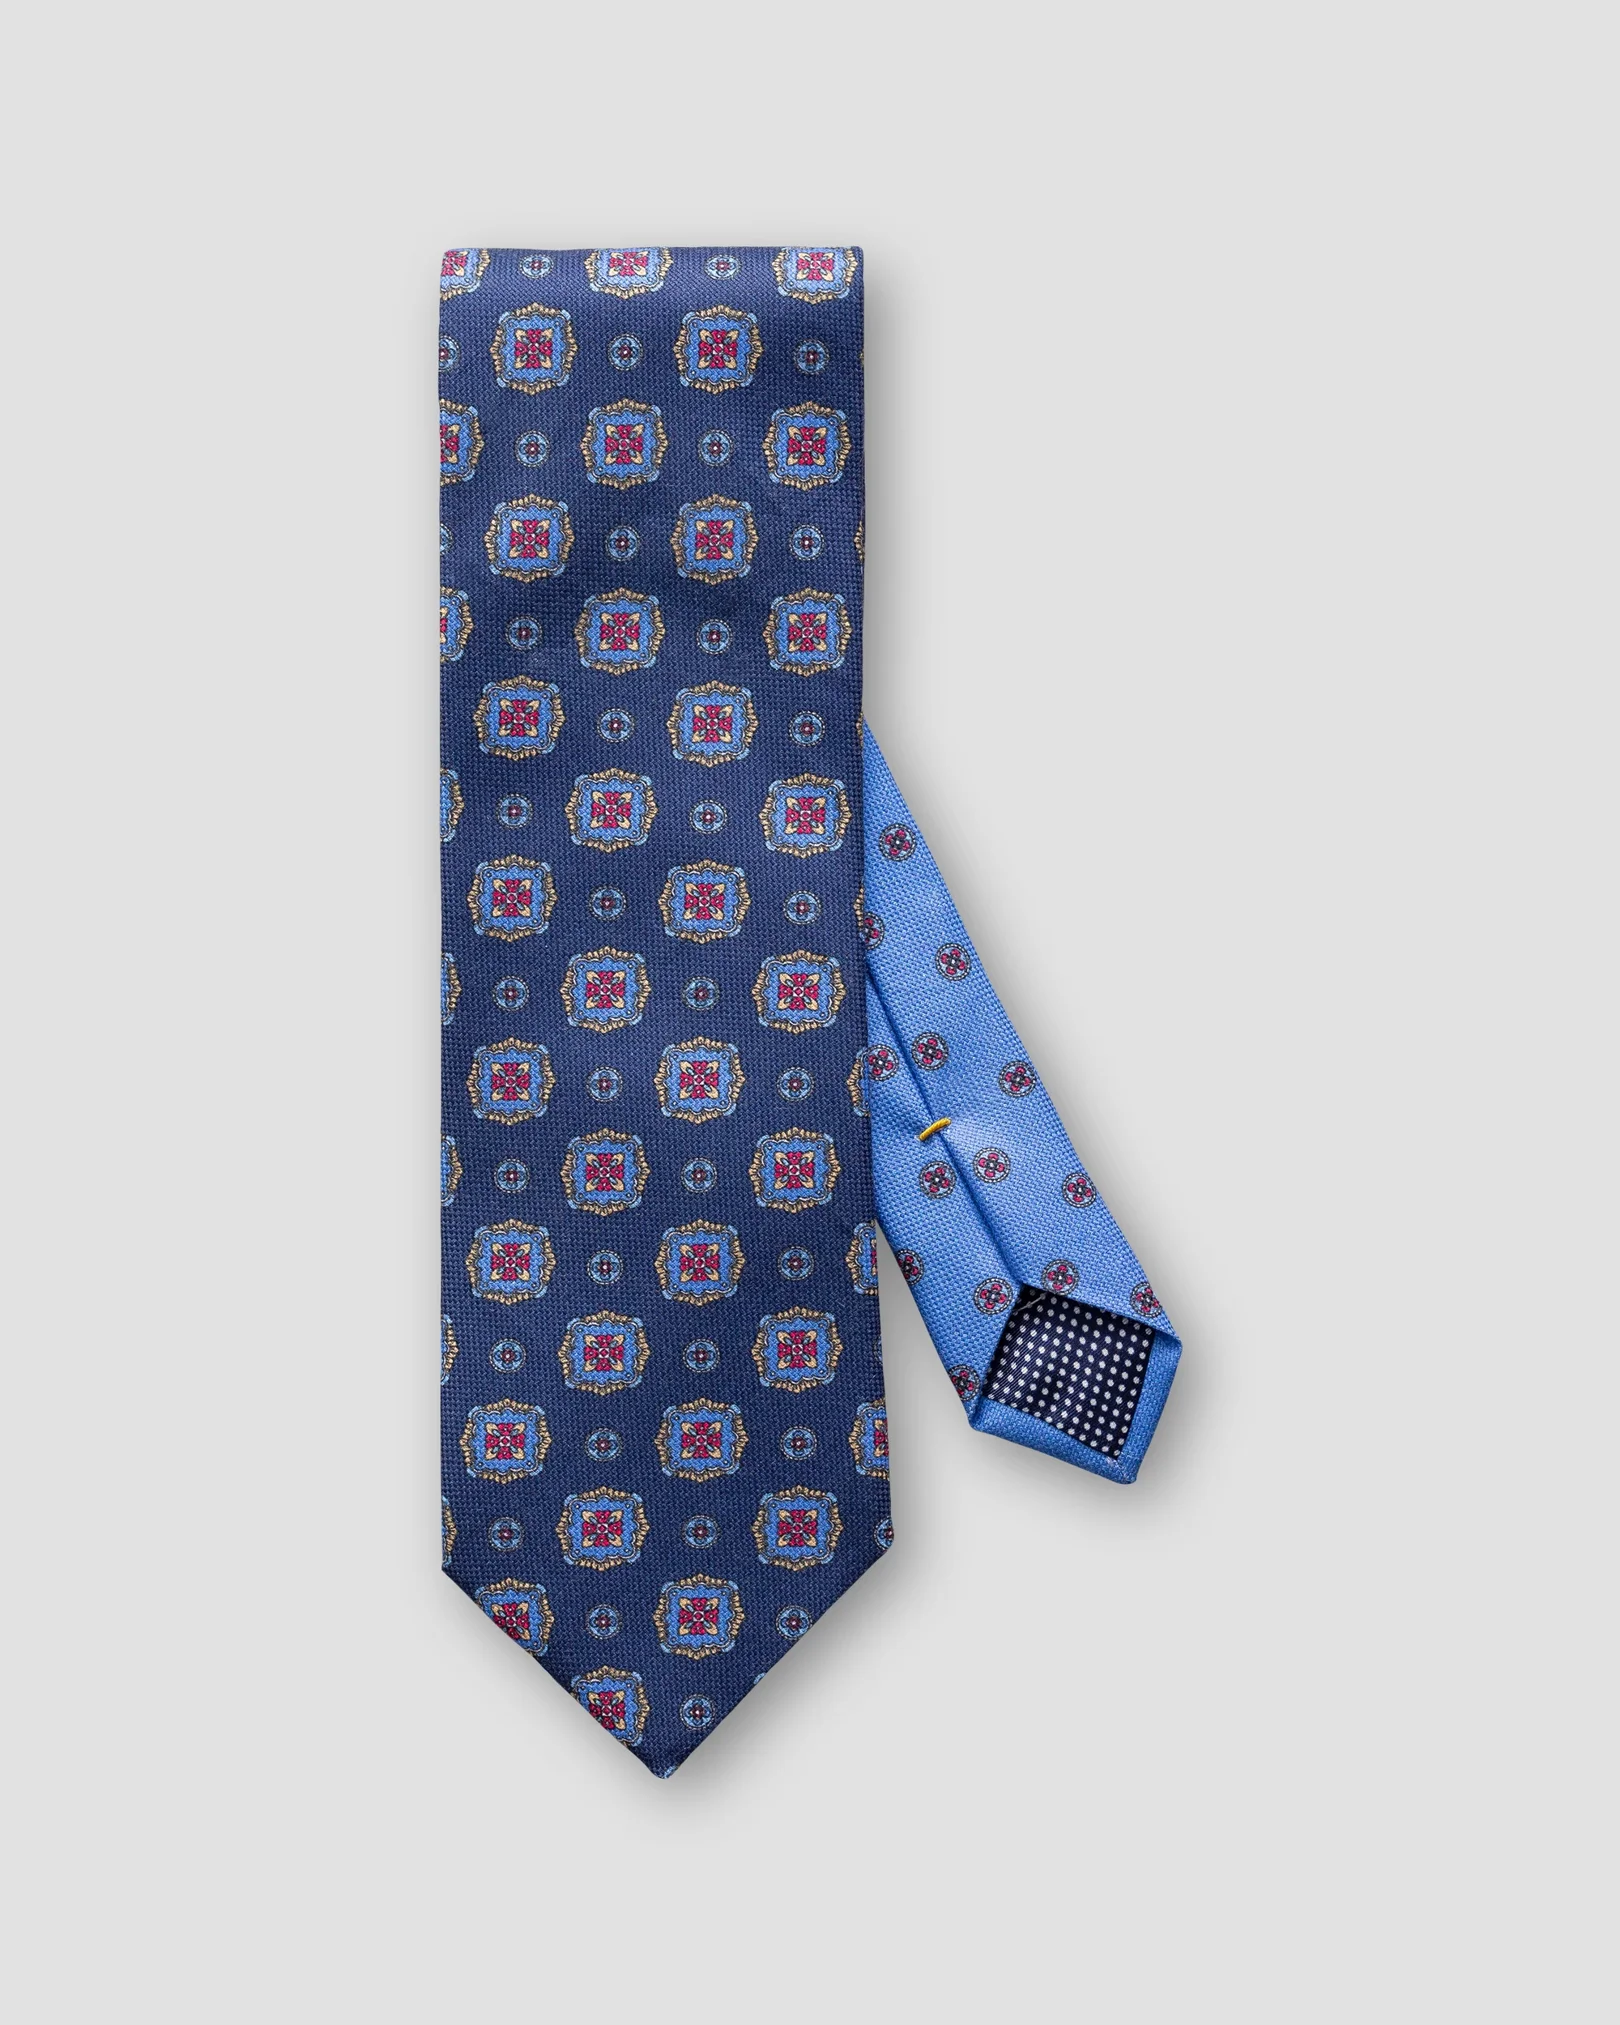 Eton - dark blue medallion print cotton tie